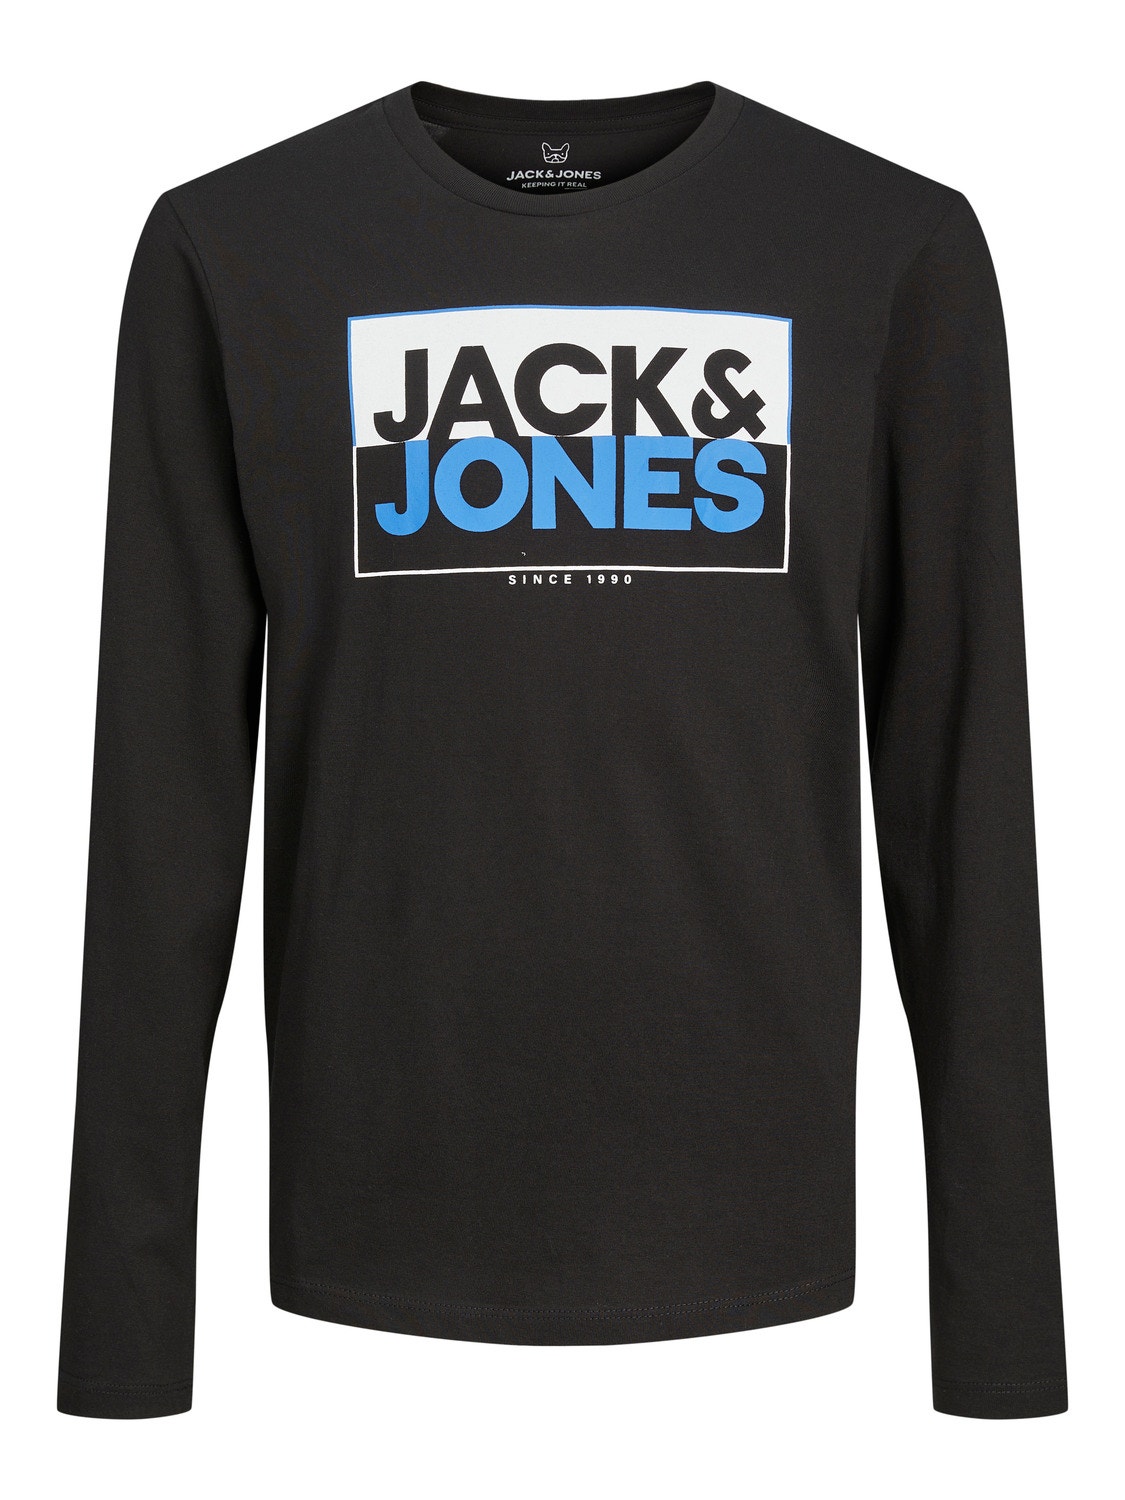 Jack & Jones Logo T-shirt For boys -Black - 12251462